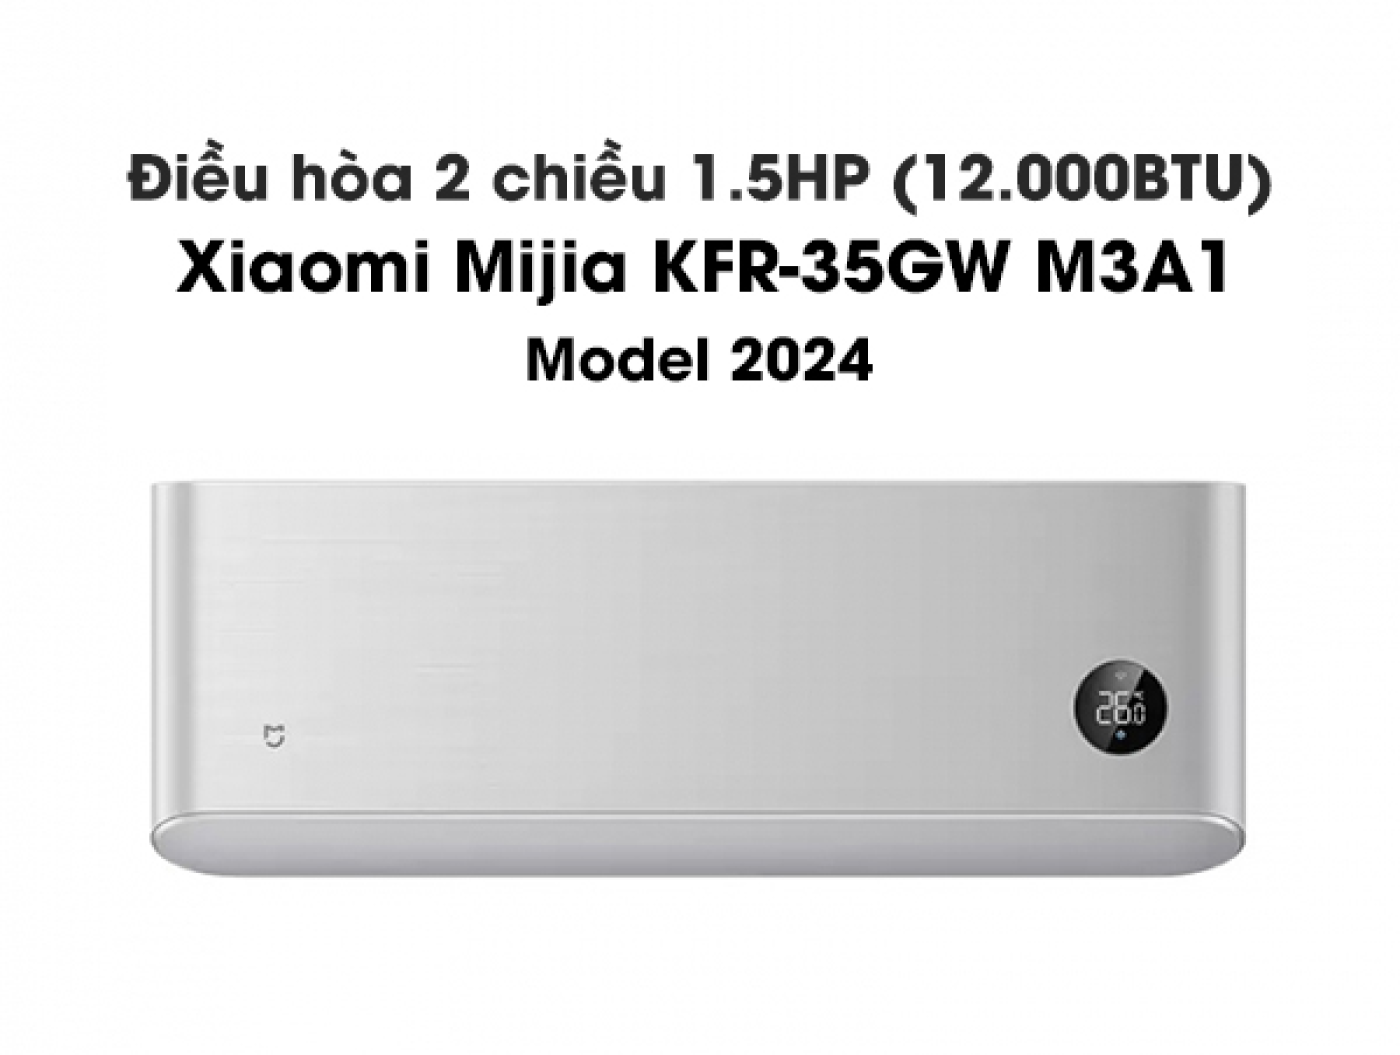 Điều hòa (máy lạnh) 2 chiều Xiaomi Mijia KFR-35GW M3A1 công suất 1.5 HP – 12.000 BTU model 2024